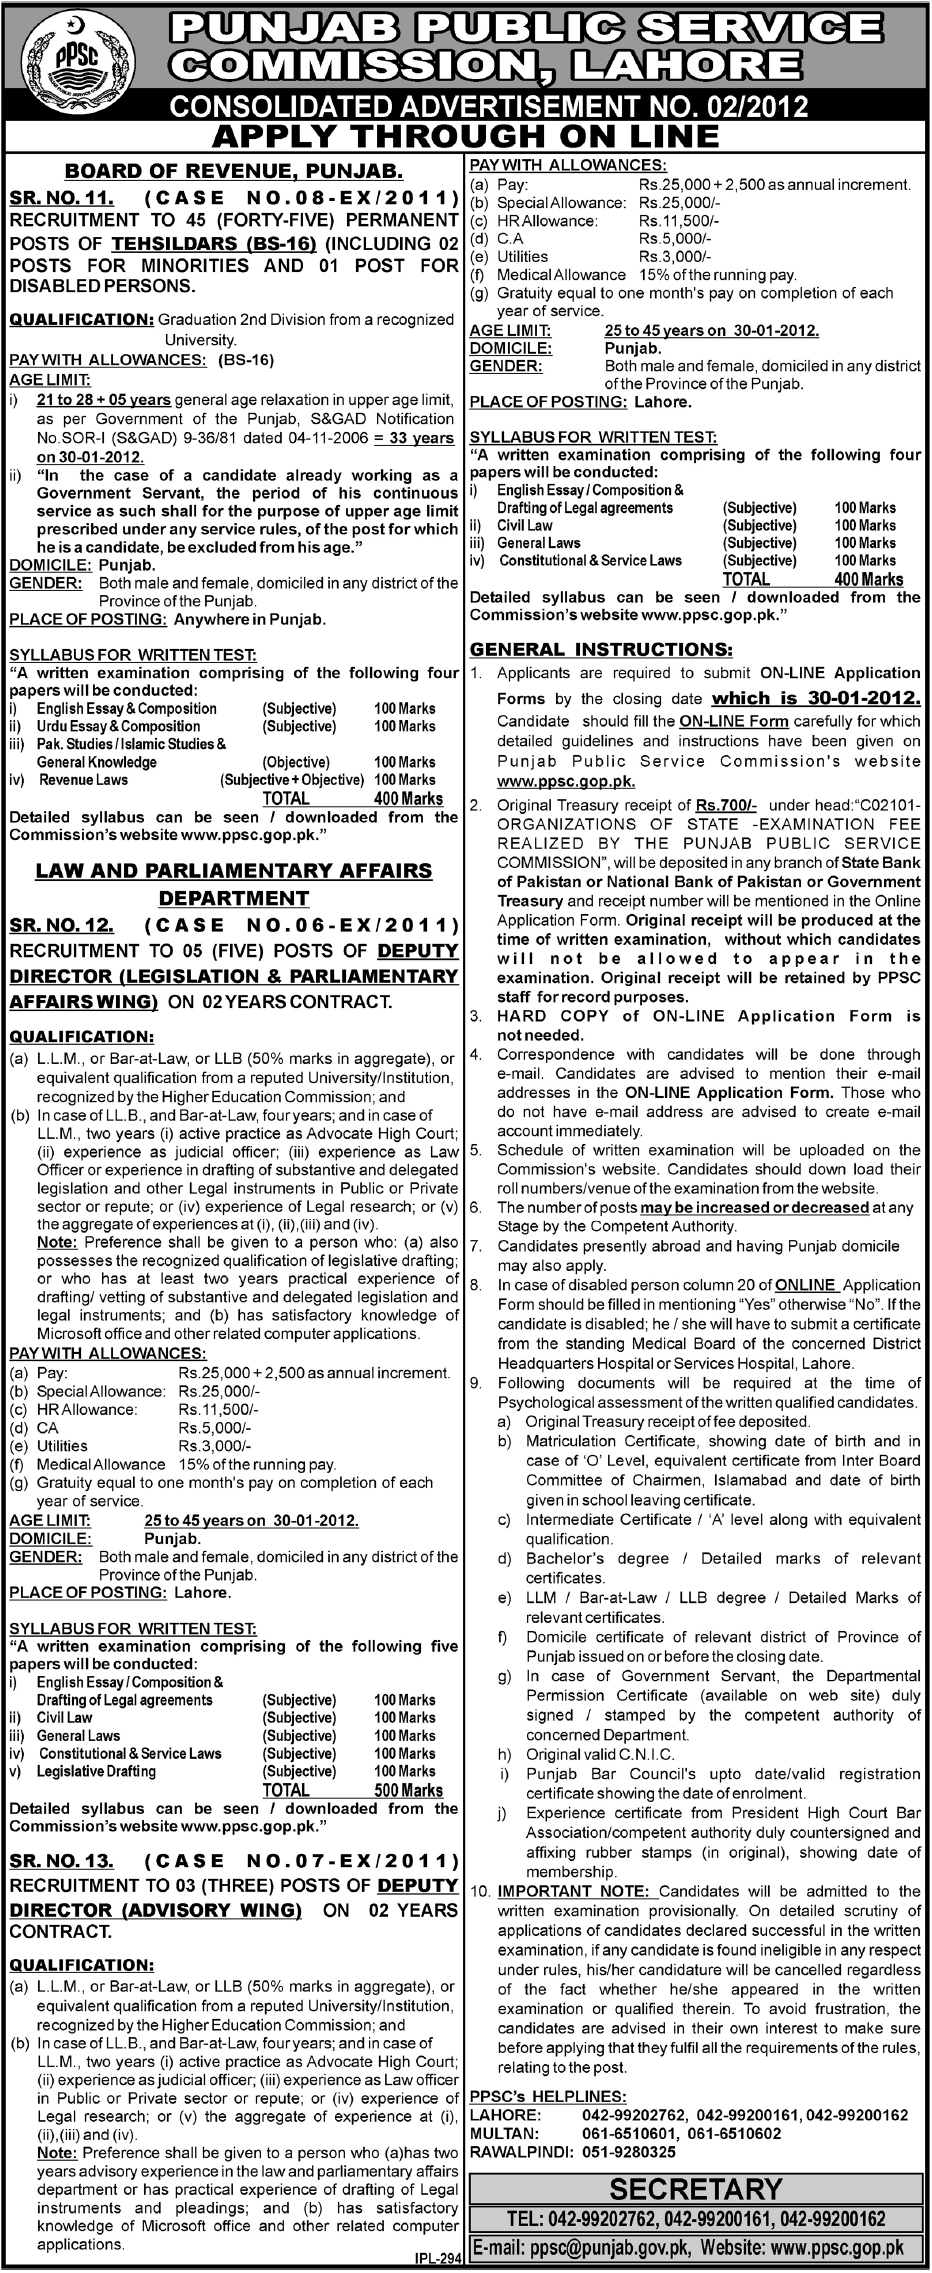 Punjab Public Service Commission, Lahore Job Opportunities